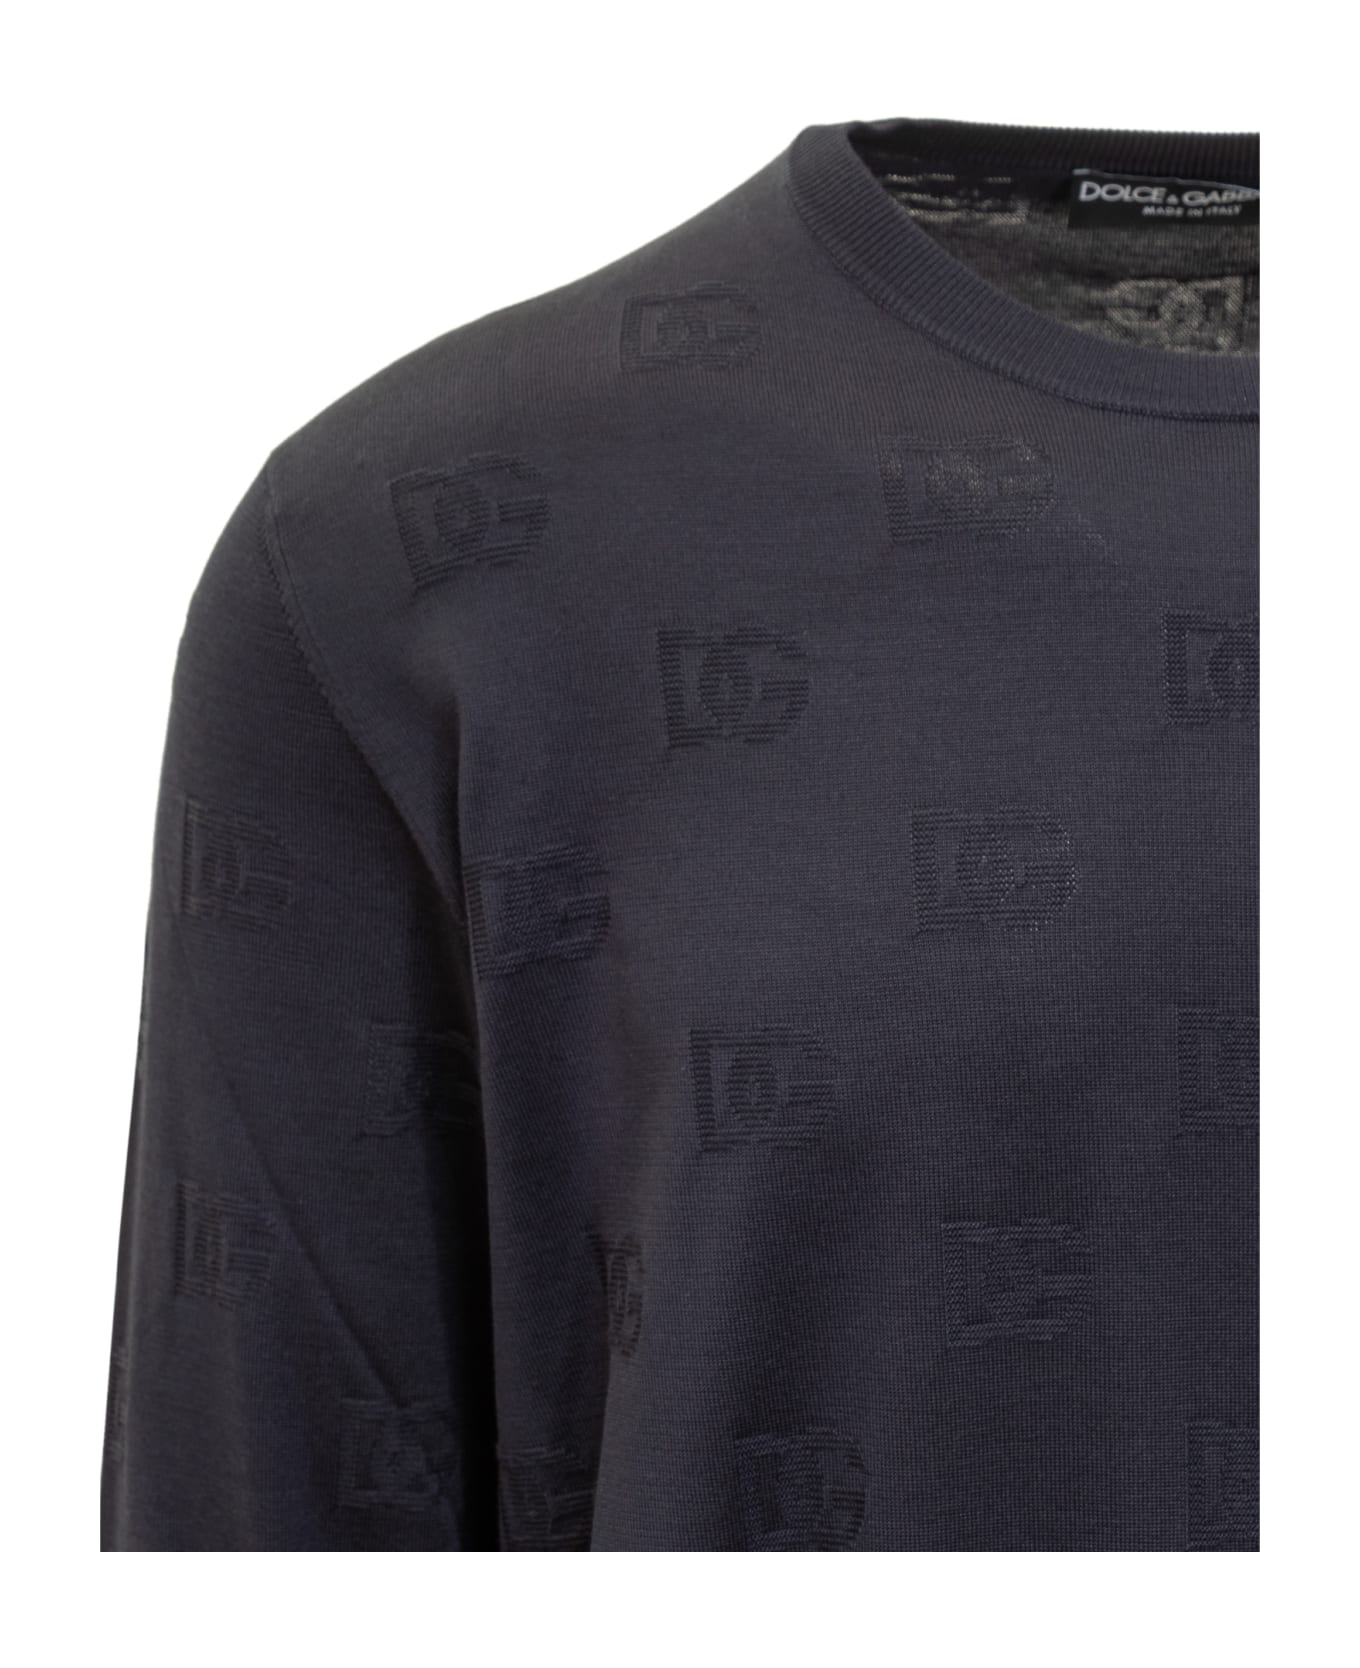 Dolce & Gabbana Sweater - Blue ニットウェア